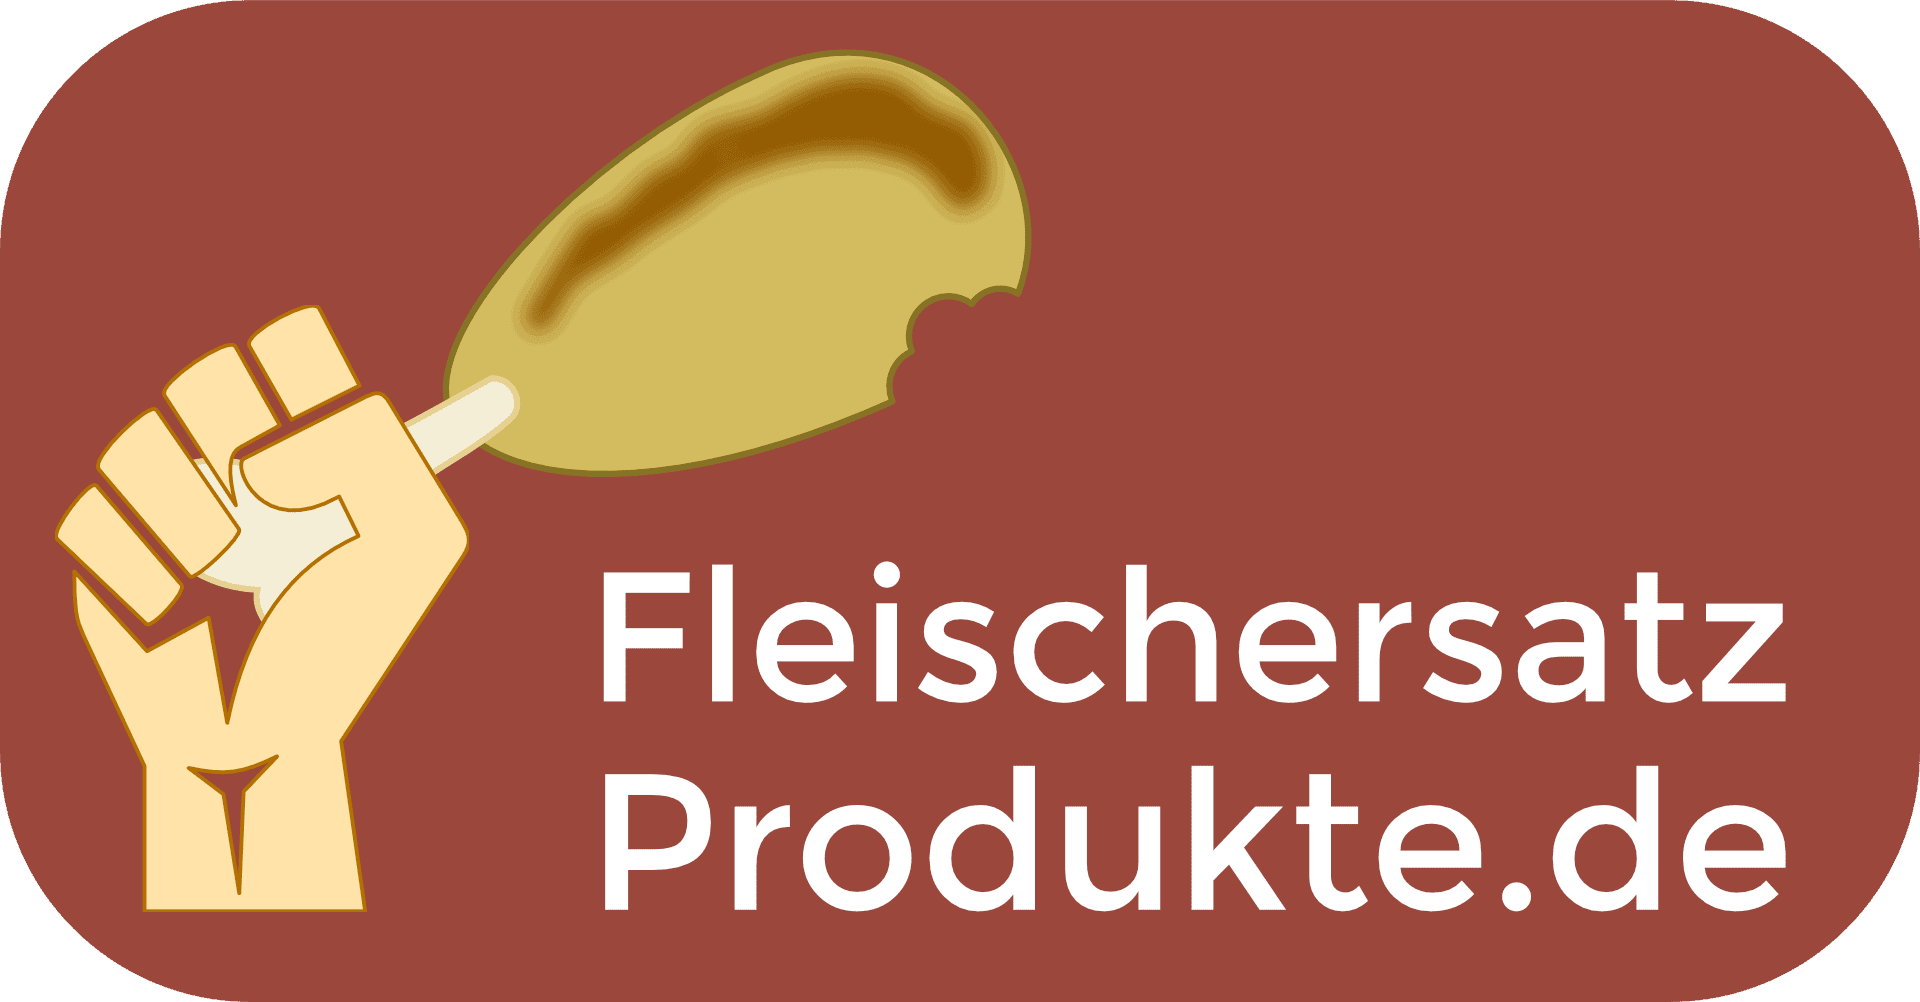 (c) Fleischersatz-produkte.de